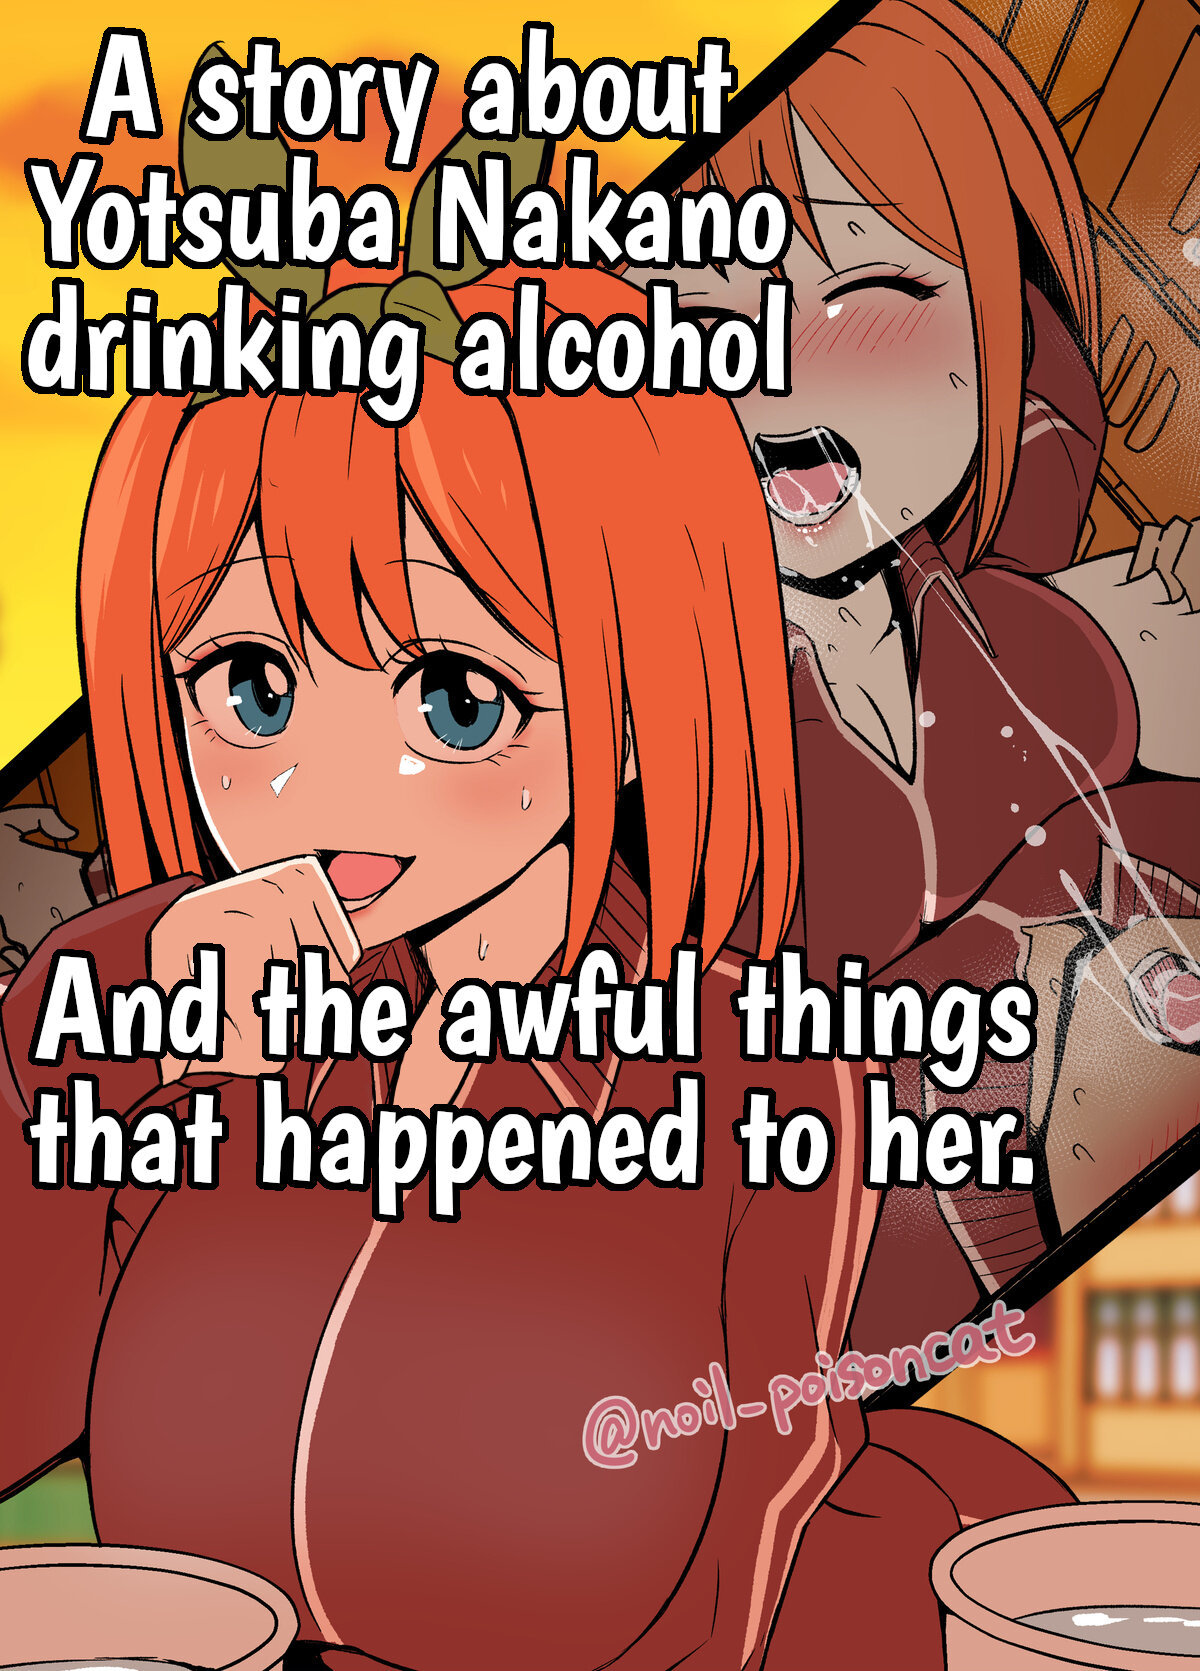 Una historia sobre Yotsuba Nakano bebiendo alcohol y las cosas horribles que le sucedieron - 0